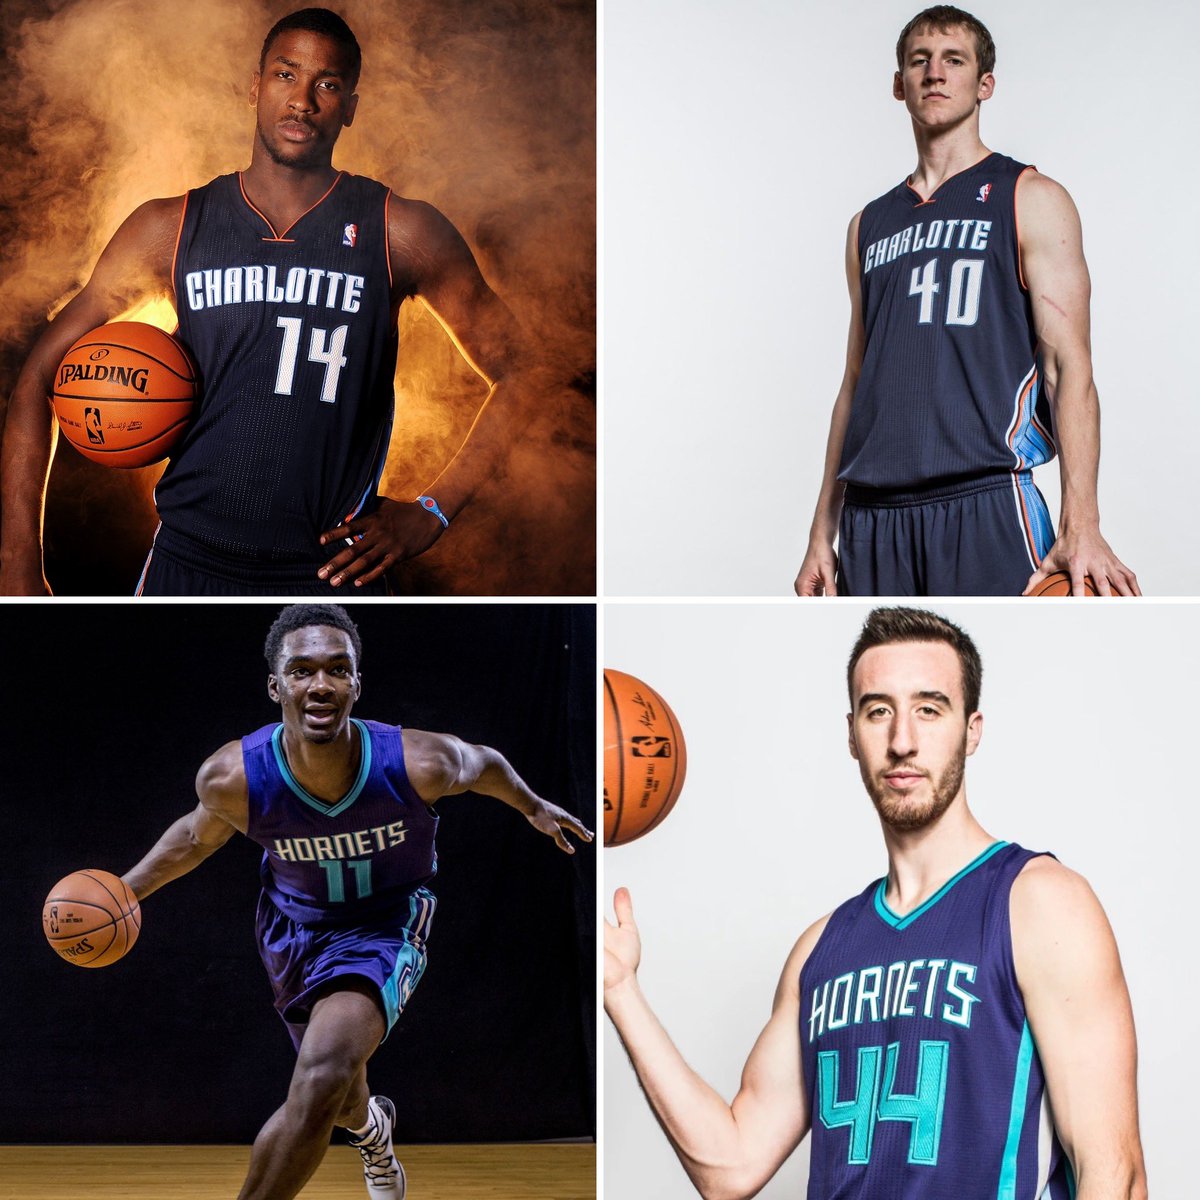 Charlotte Bobcats/Hornets

2012 Draftı: Kidd-Gilchrist (2. sıra)
2013 Draftı: Cody Zeller (4. sıra)
2014 Draftı: Noah Vonleh (9. sıra)
2015 Draftı: Frank Kaminsky (9. sıra)